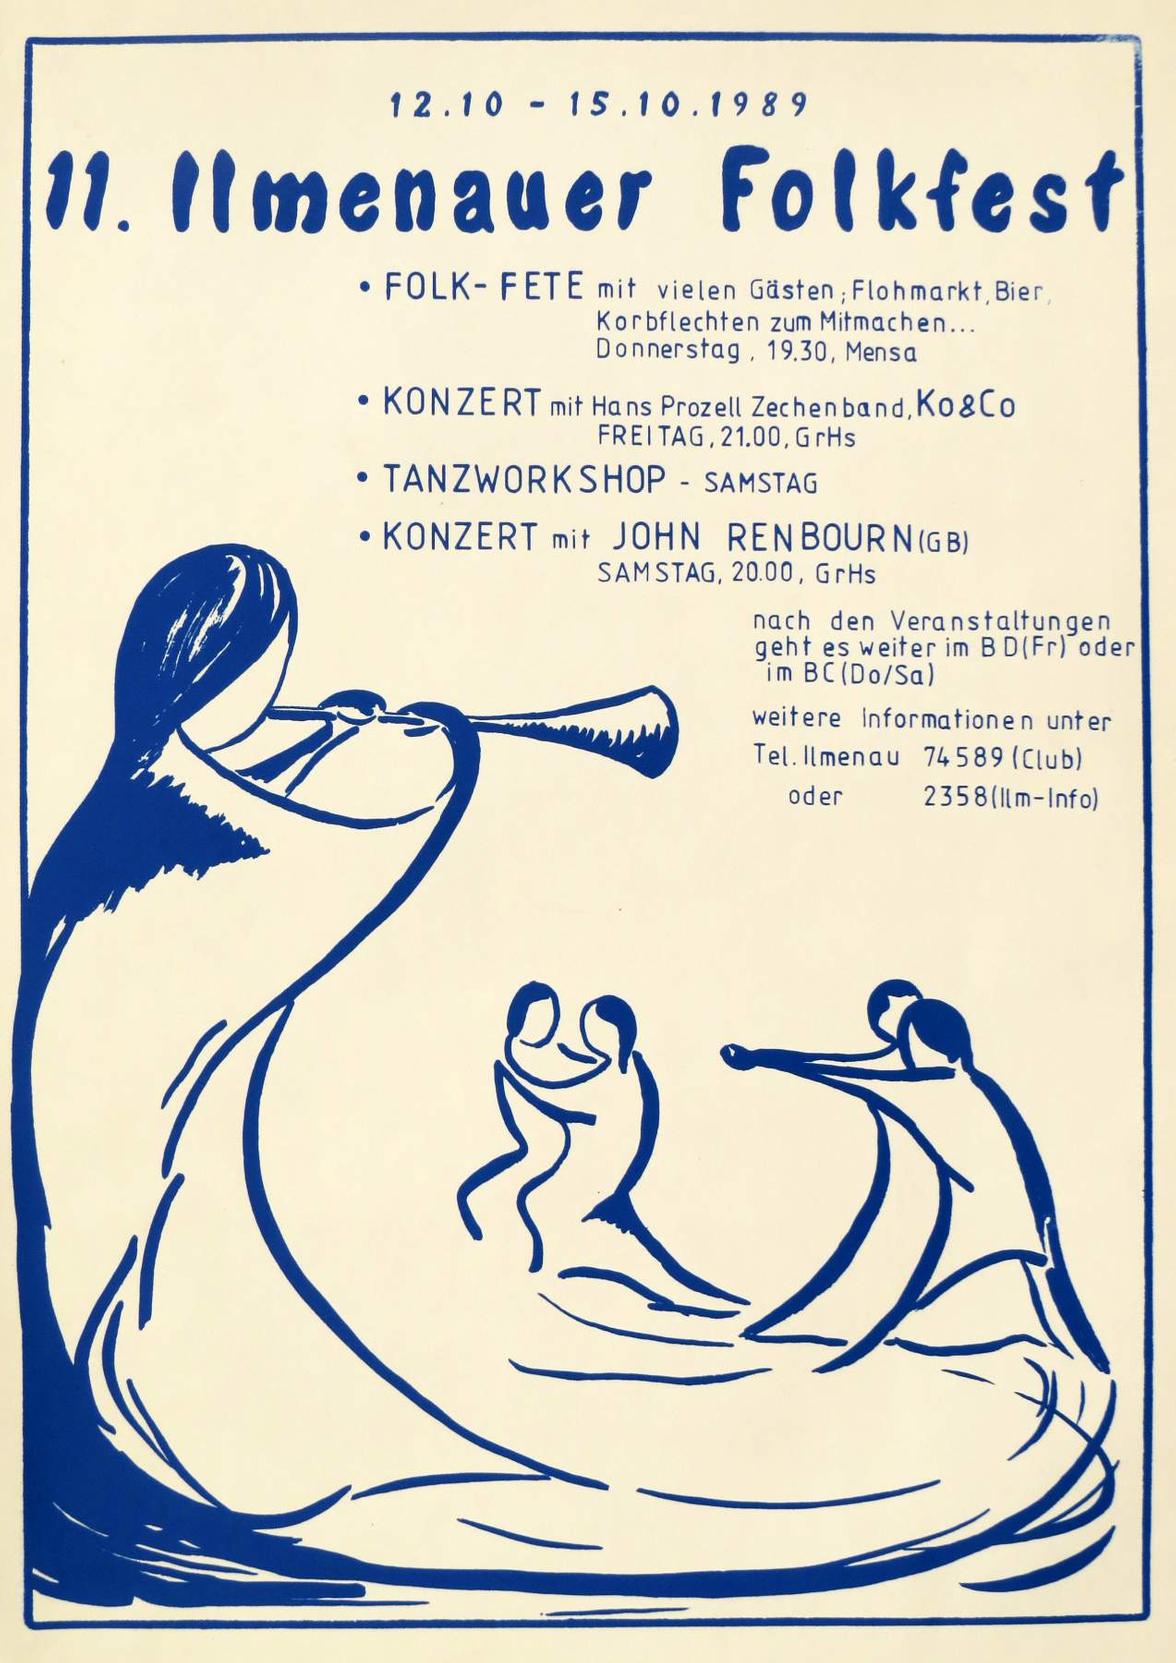 11. Folktage 1989 (Bild: Sammlung Gernot Ecke)